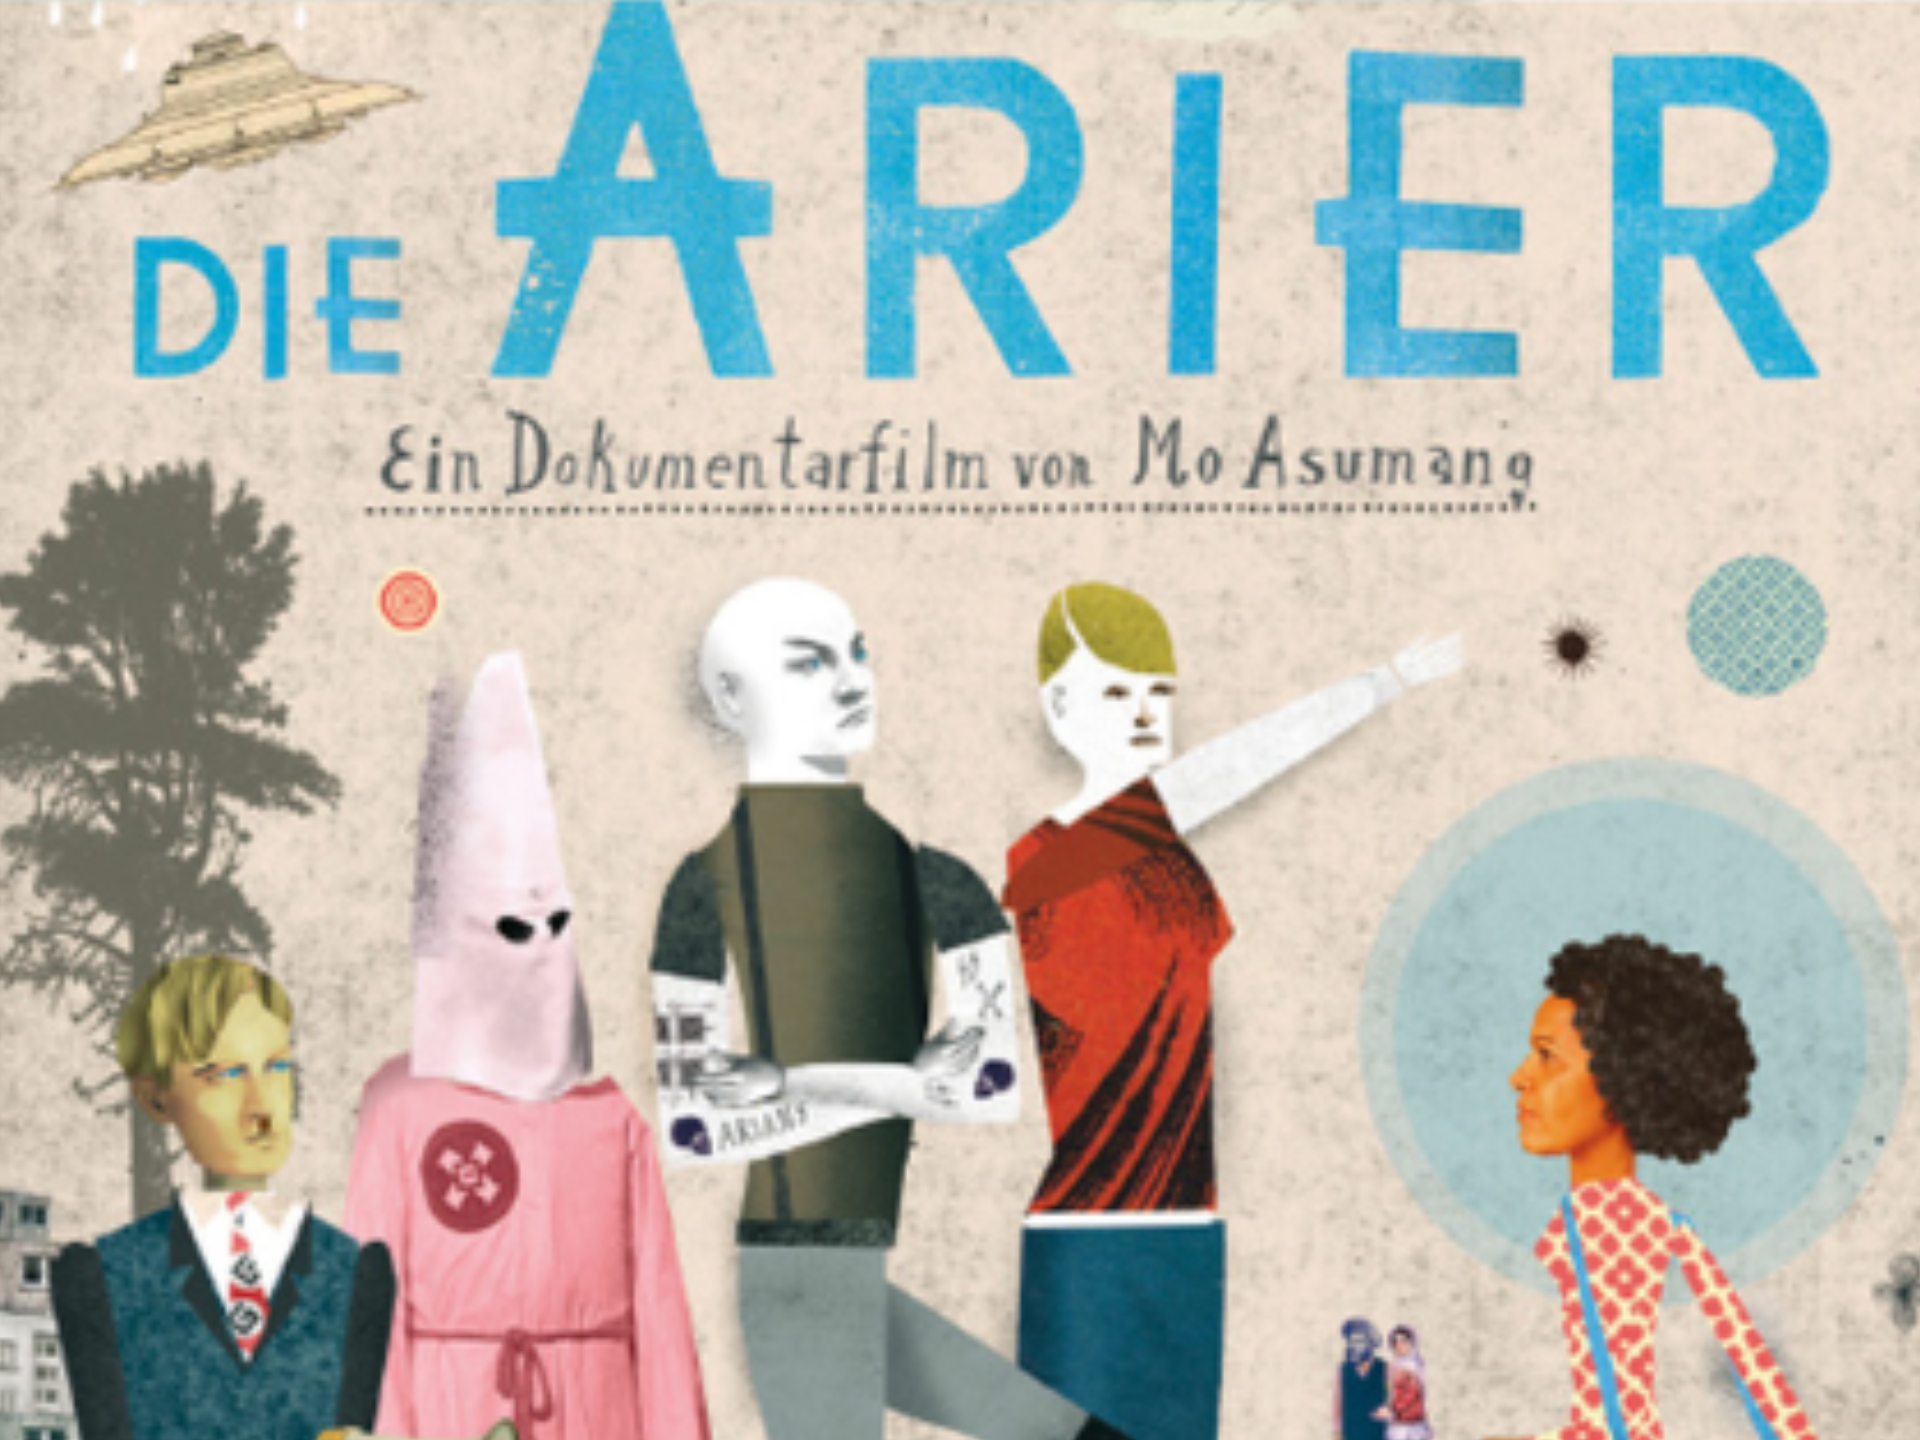 Filmvorführung + Gespräch | Dokumentarfilm “Die Arier” (2014) von Mo Asumang | Nur für FLINTA* + BIPoC